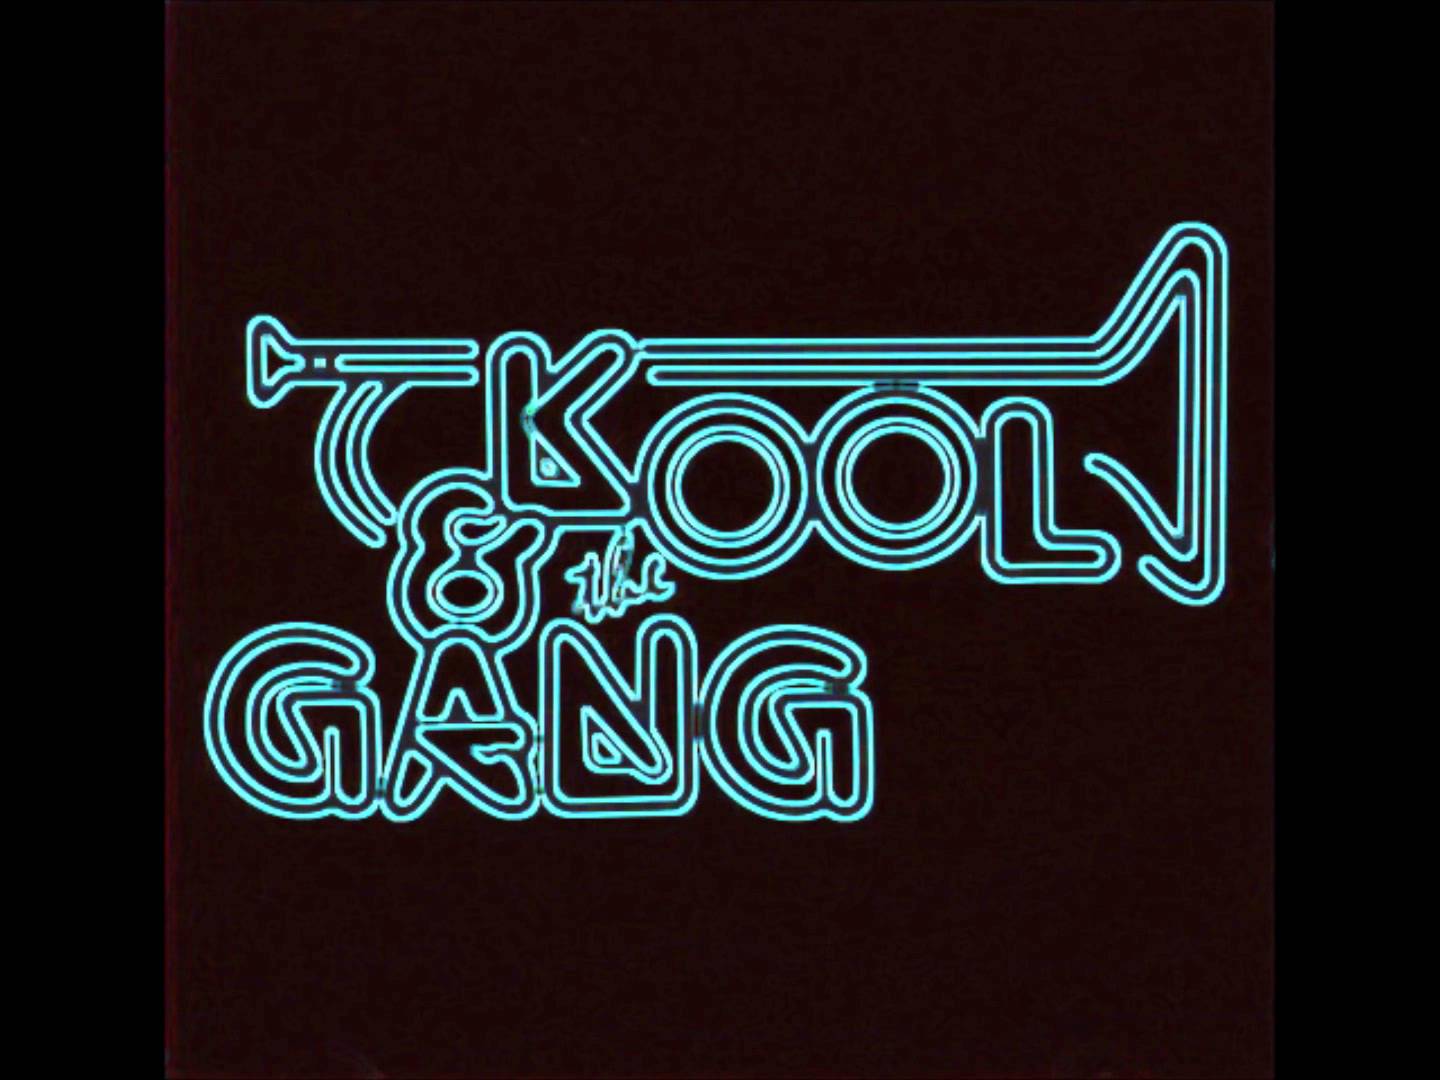 Kool and the Gang